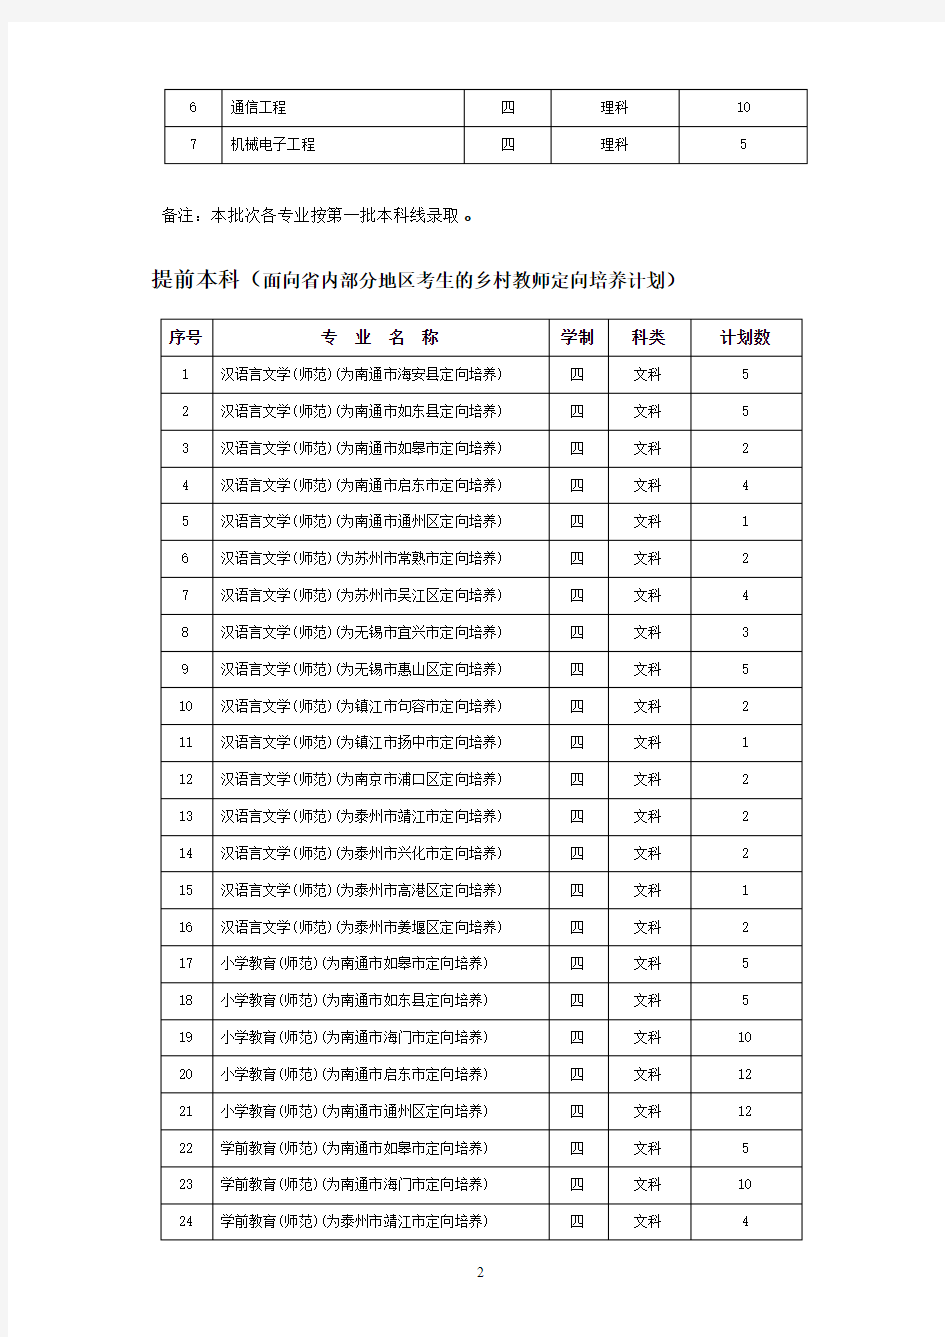 南通大学2018年江苏省内招生计划一览表